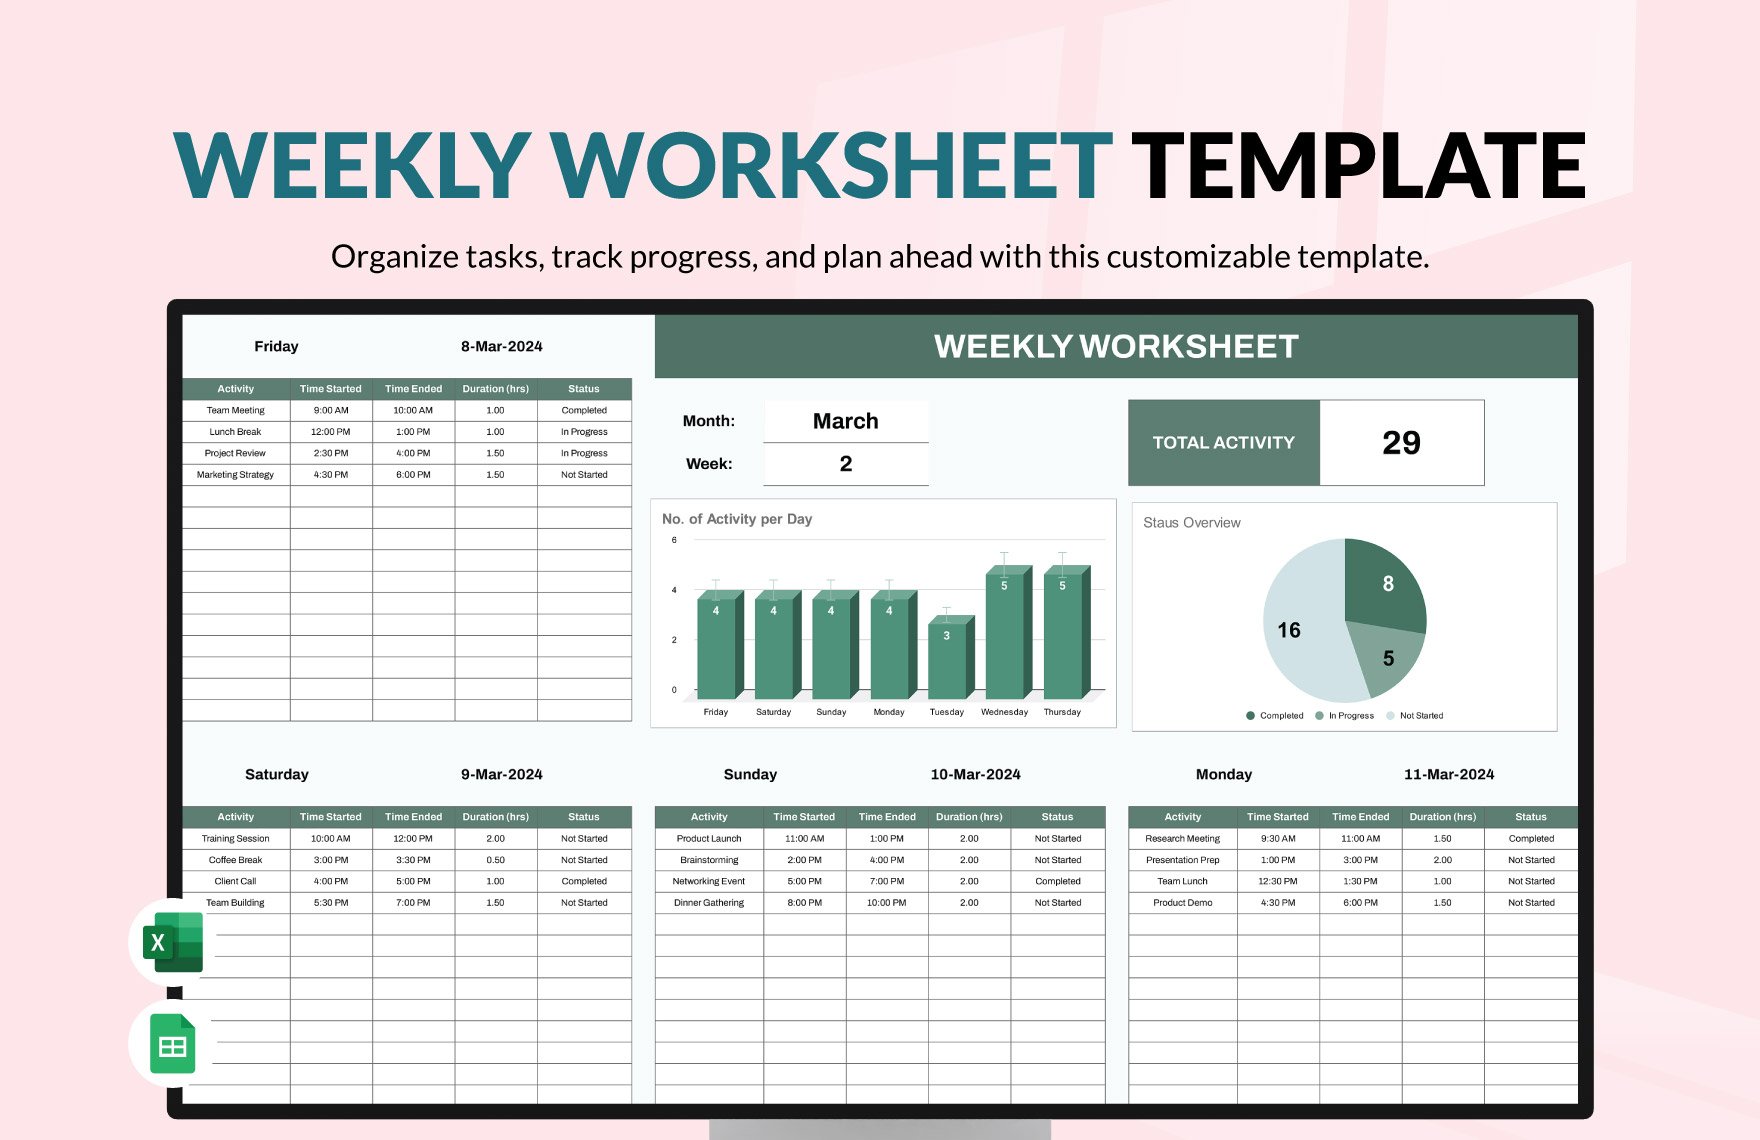 Weekly Worksheet Template in Excel, Google Sheets